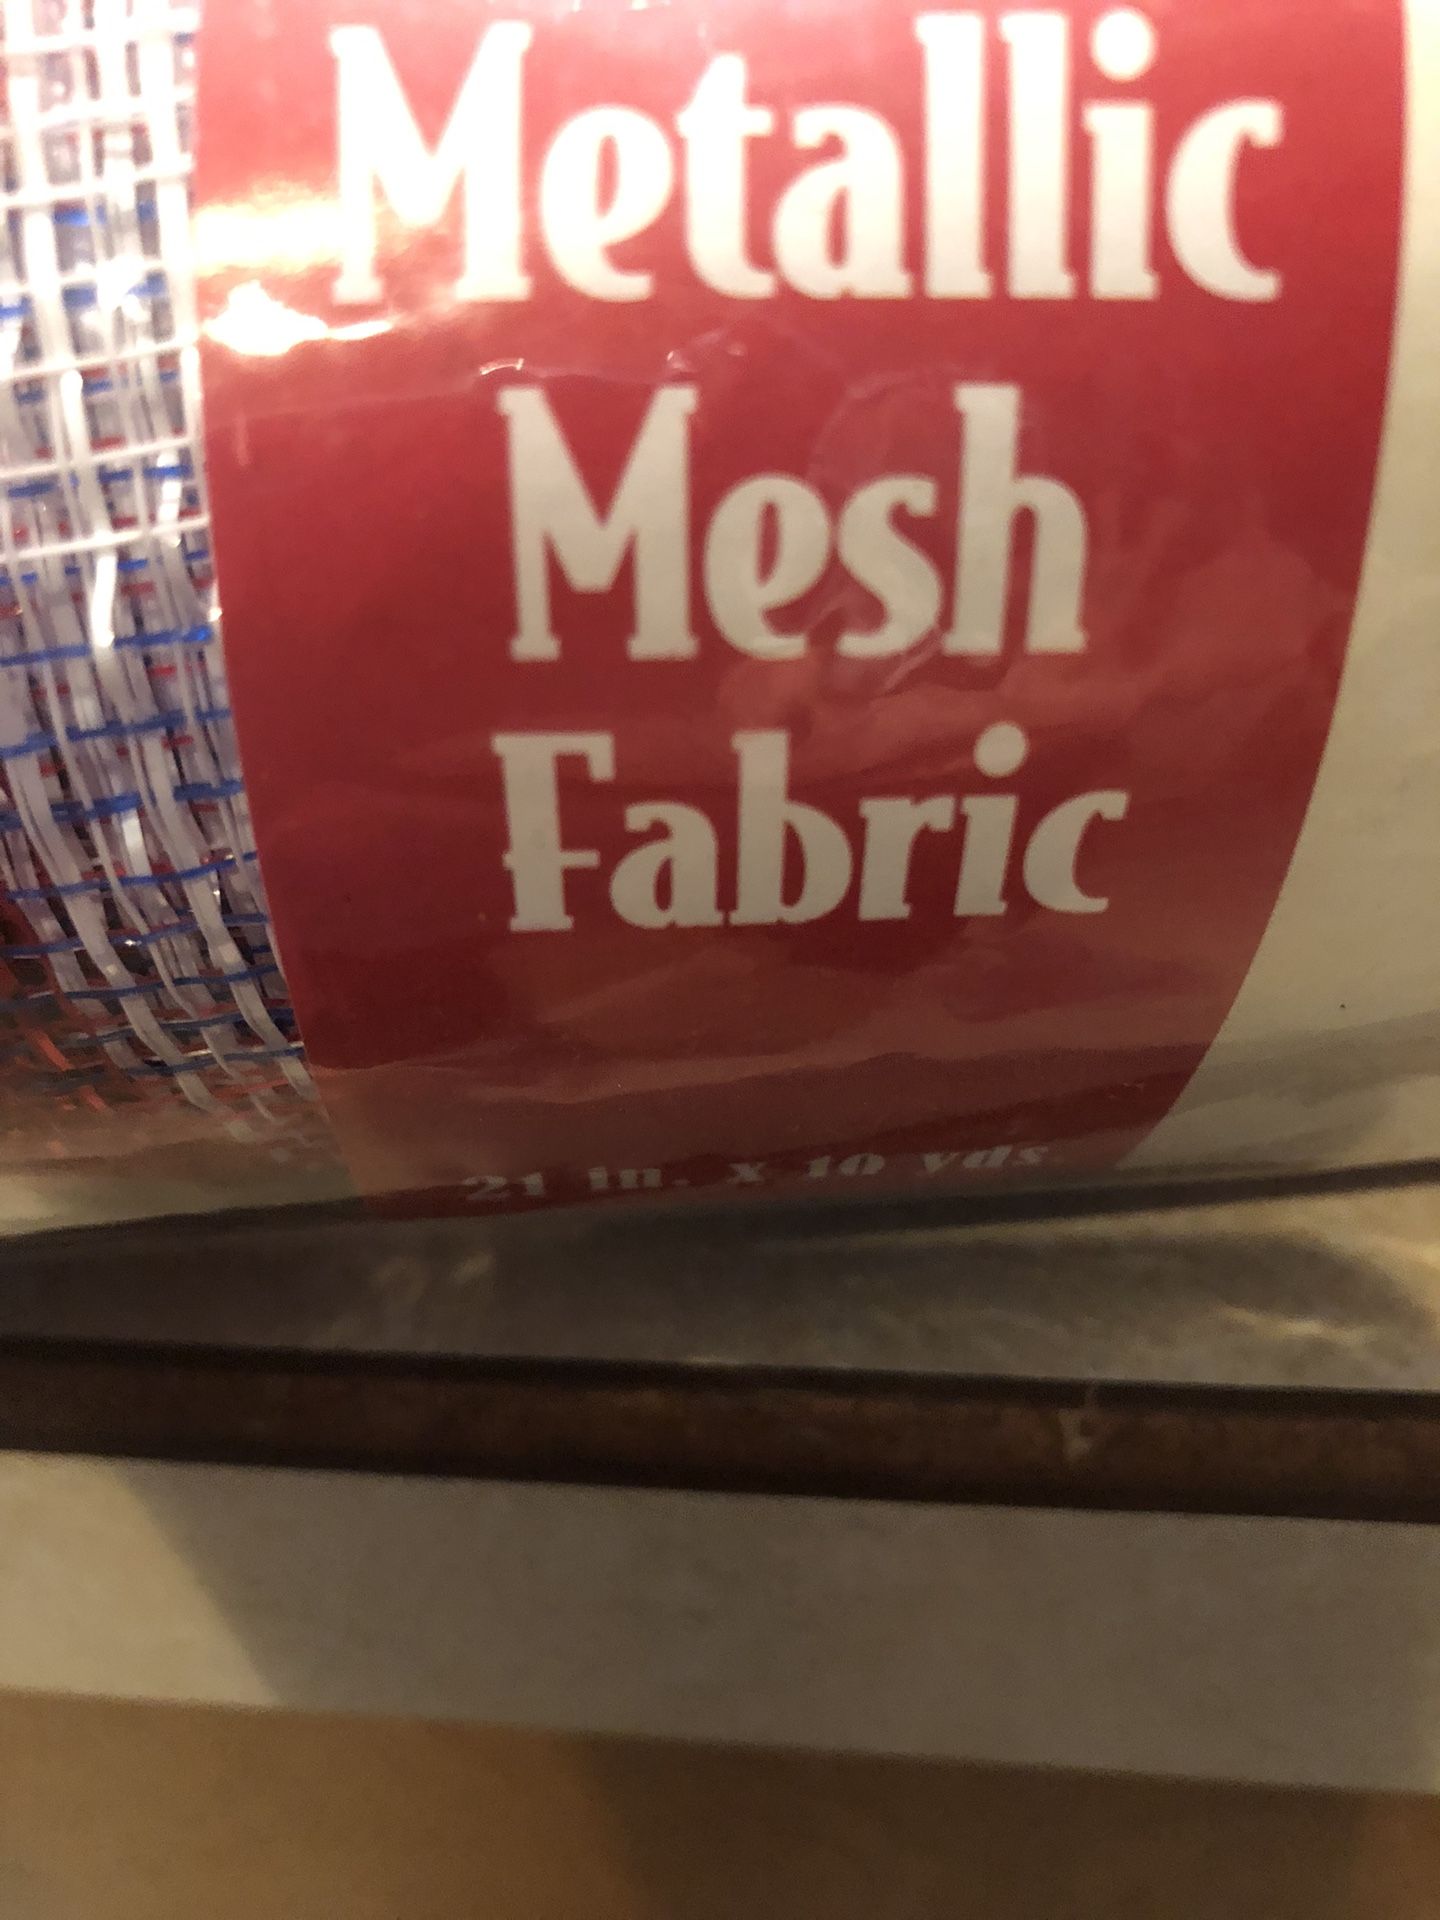 NEW Metallic Mesh Fabric— Patriotic